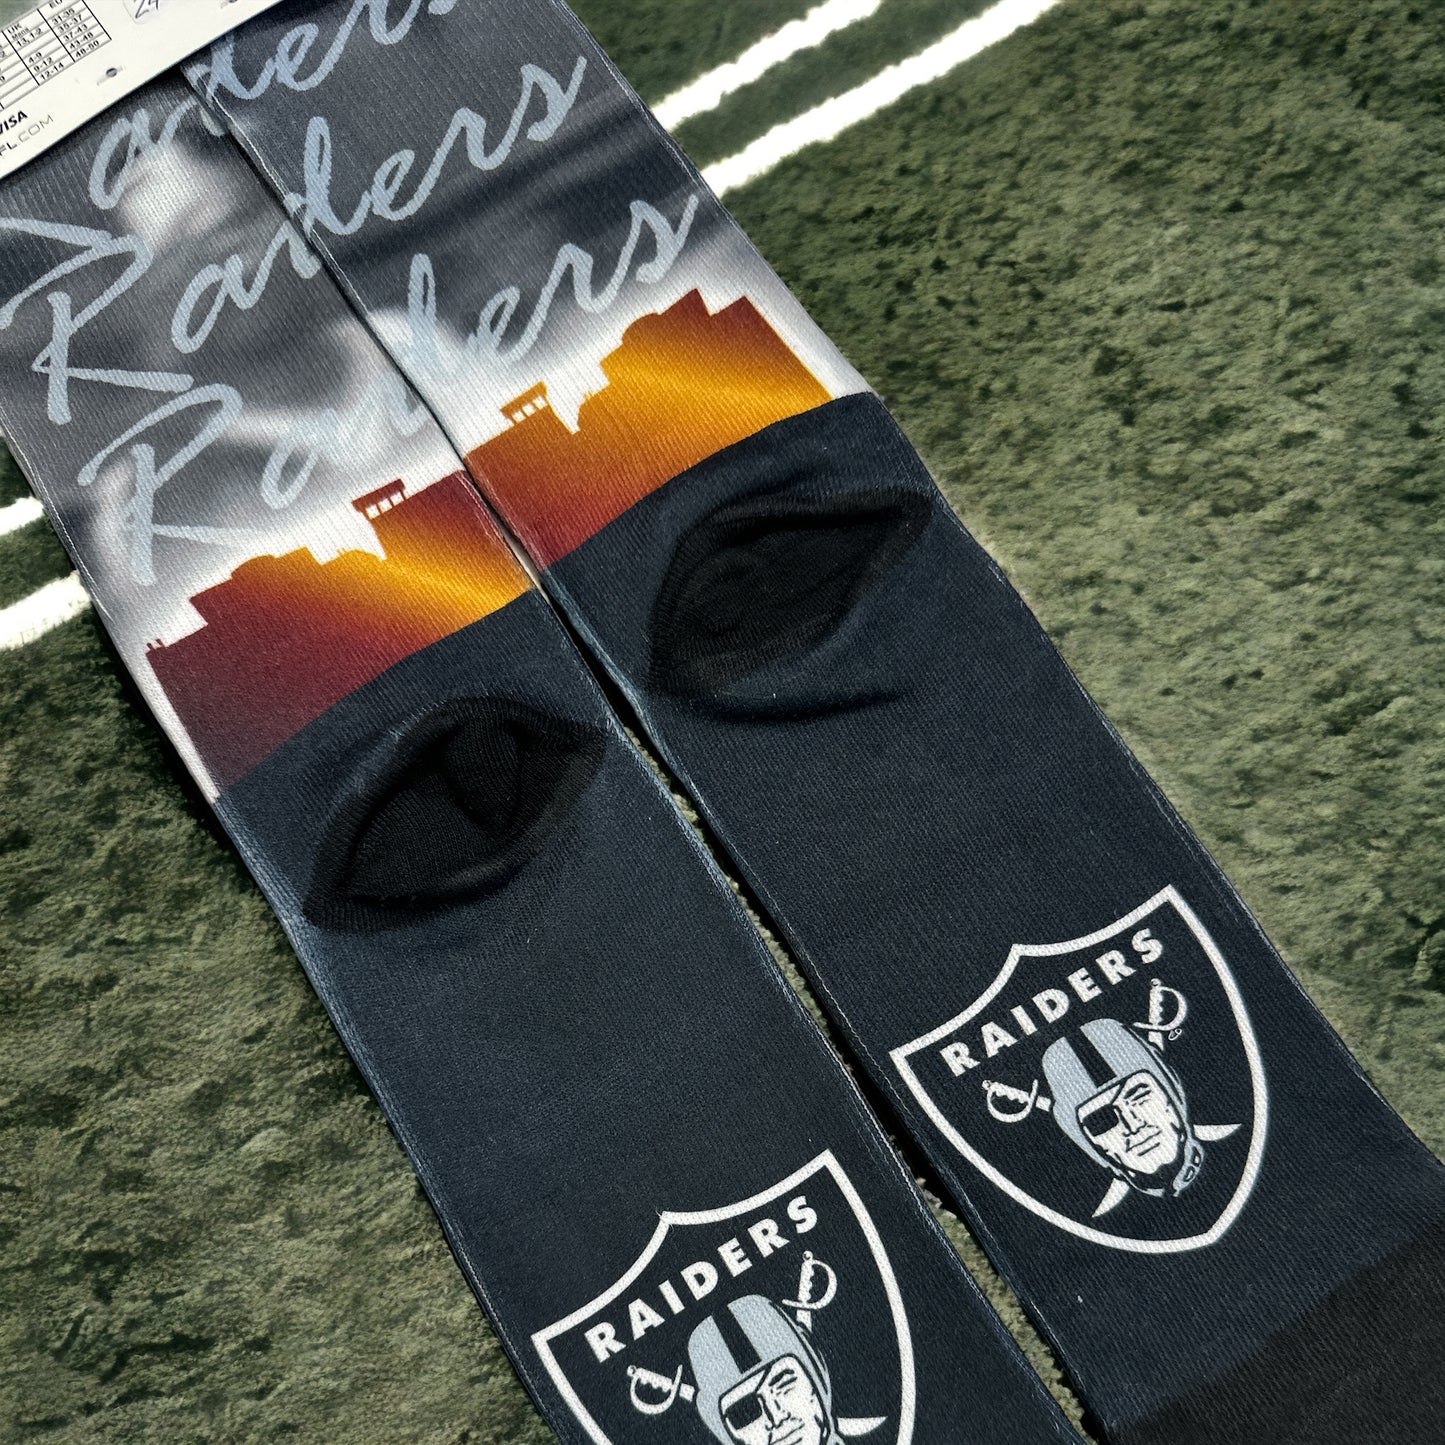 Raiders Socks